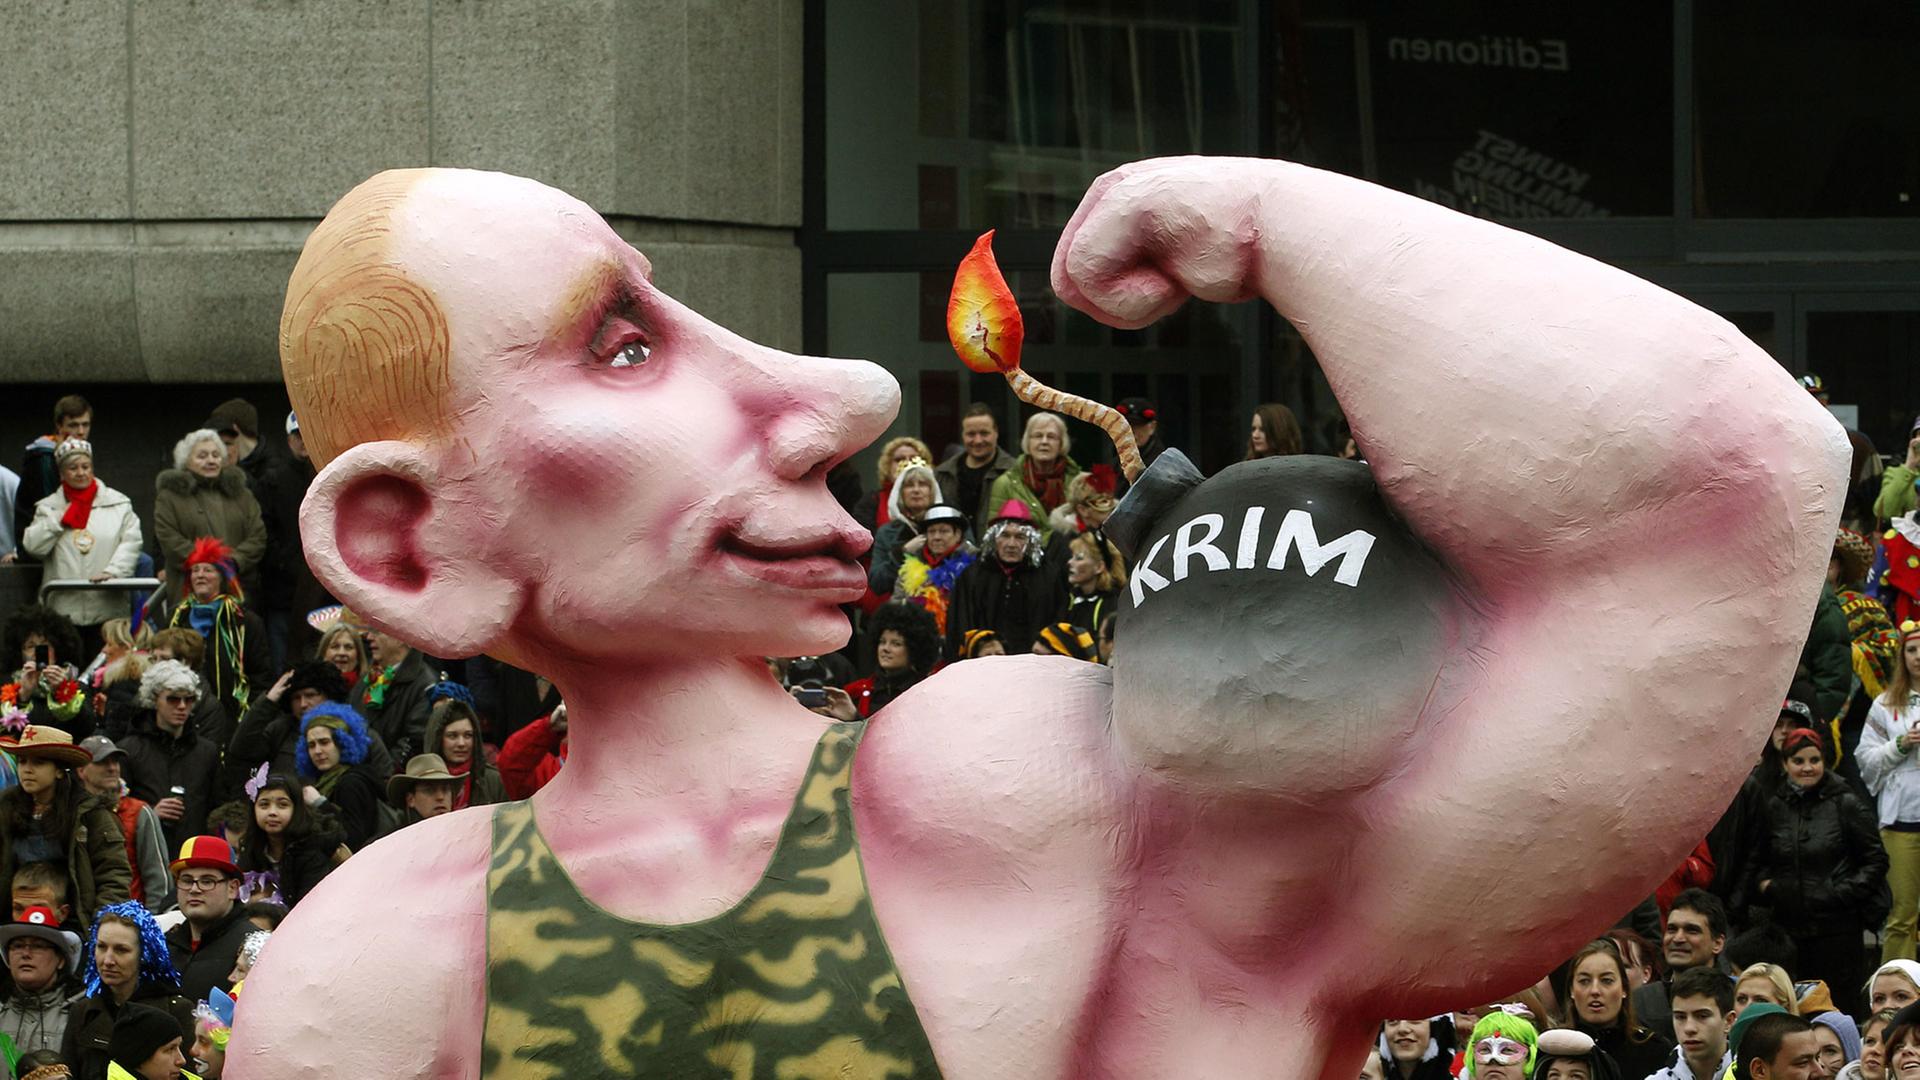 Ein Motivwagen auf dem Düsseldorfer Karnevalszug zeigt einen übergroßen Wladimir Putin in einem Camouflage-Unterhemd , der seinen Bizeps zeigt, auf dem "Krim" steht.